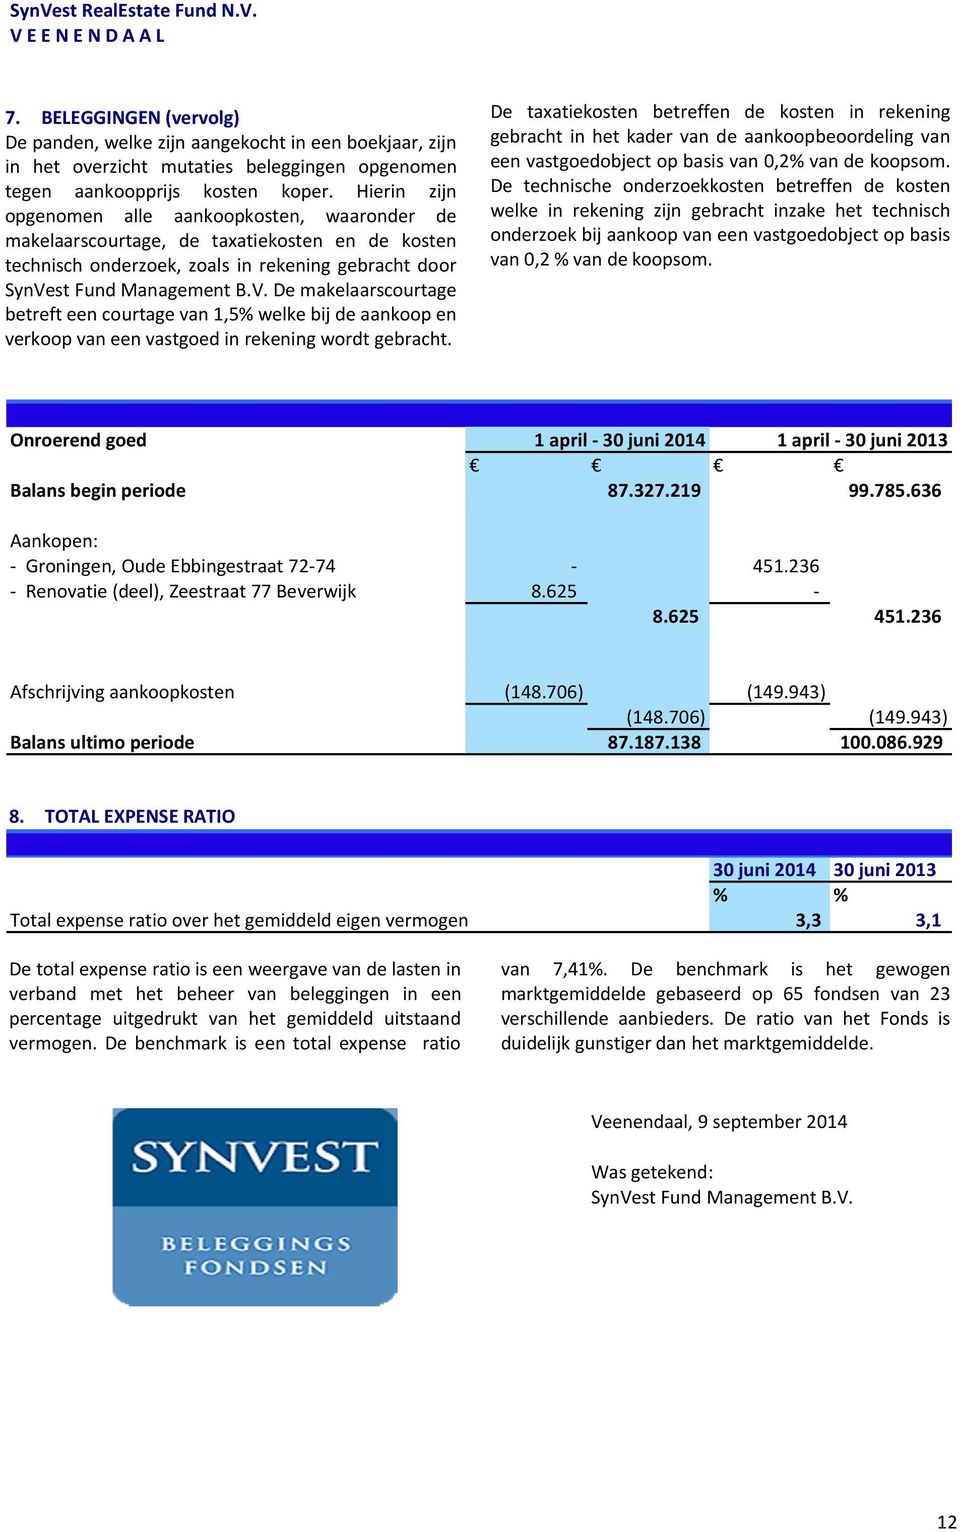 st Fund Management B.V. De makelaarscourtage betreft een courtage van 1,5% welke bij de aankoop en verkoop van een vastgoed in rekening wordt gebracht.